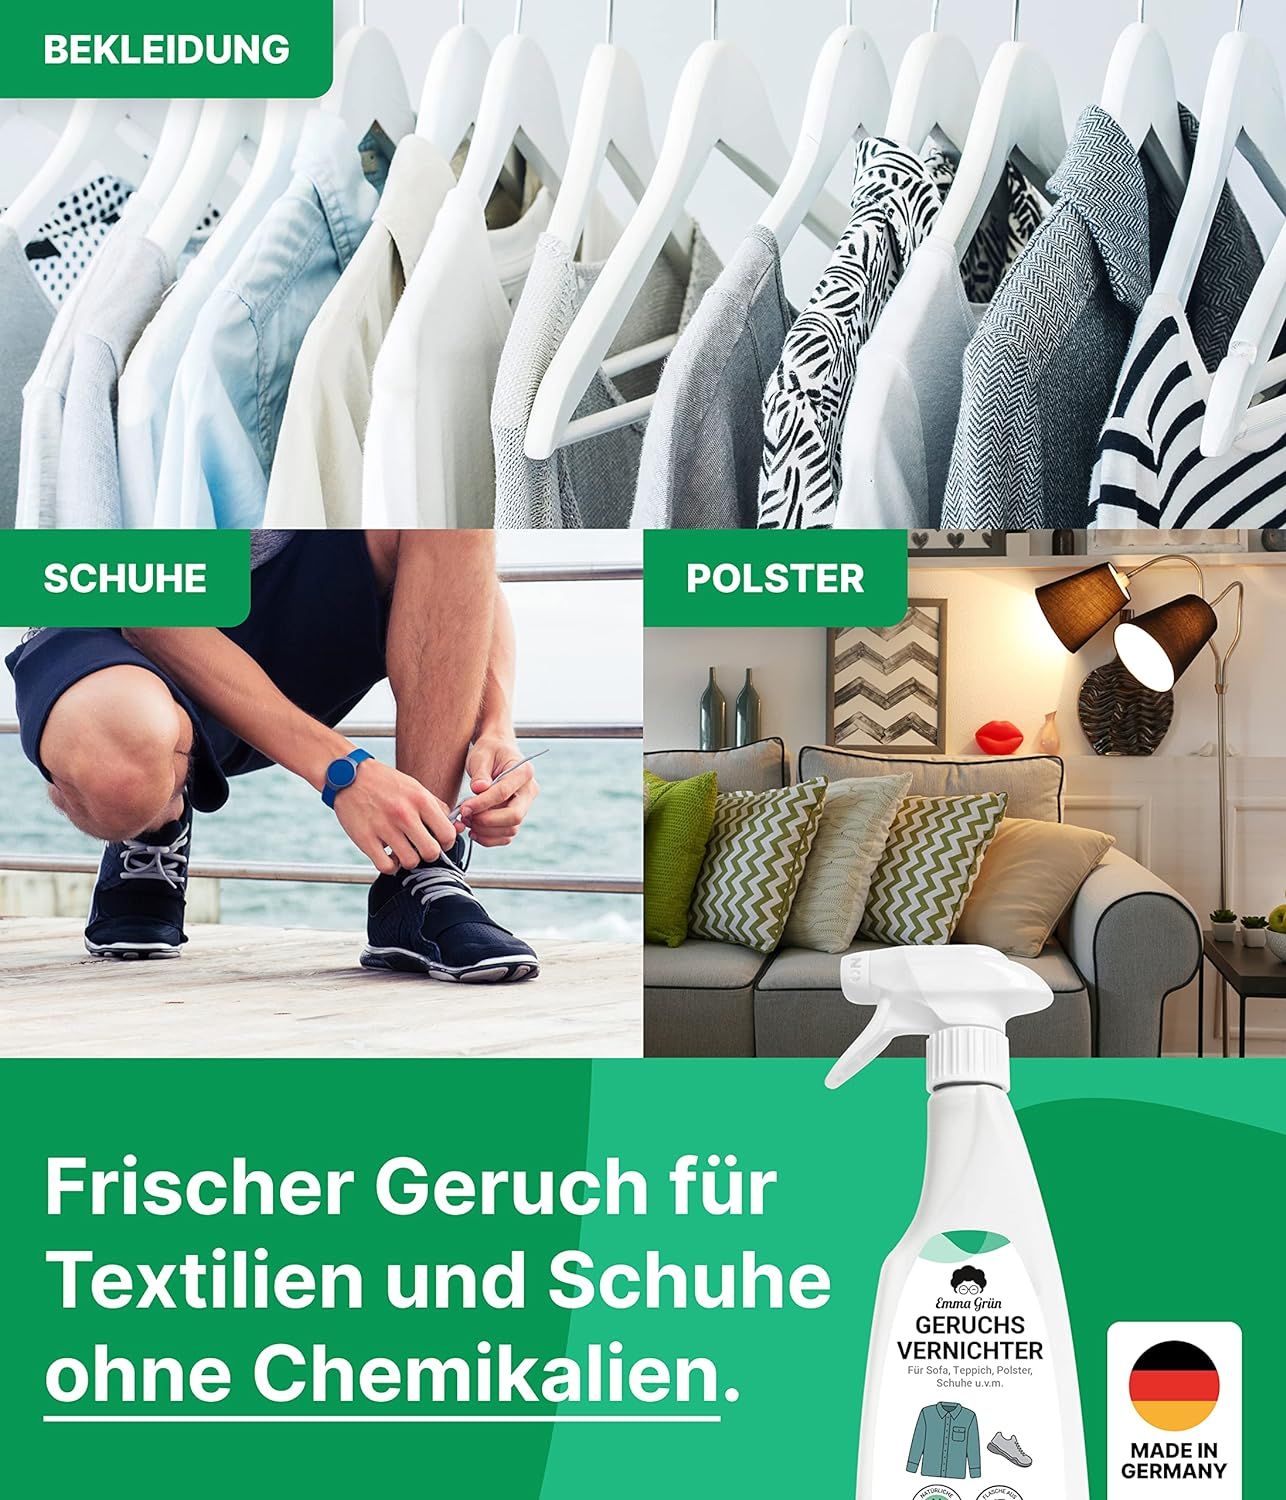 Emma Grün® nachhaltiges Textil & Schuhspray